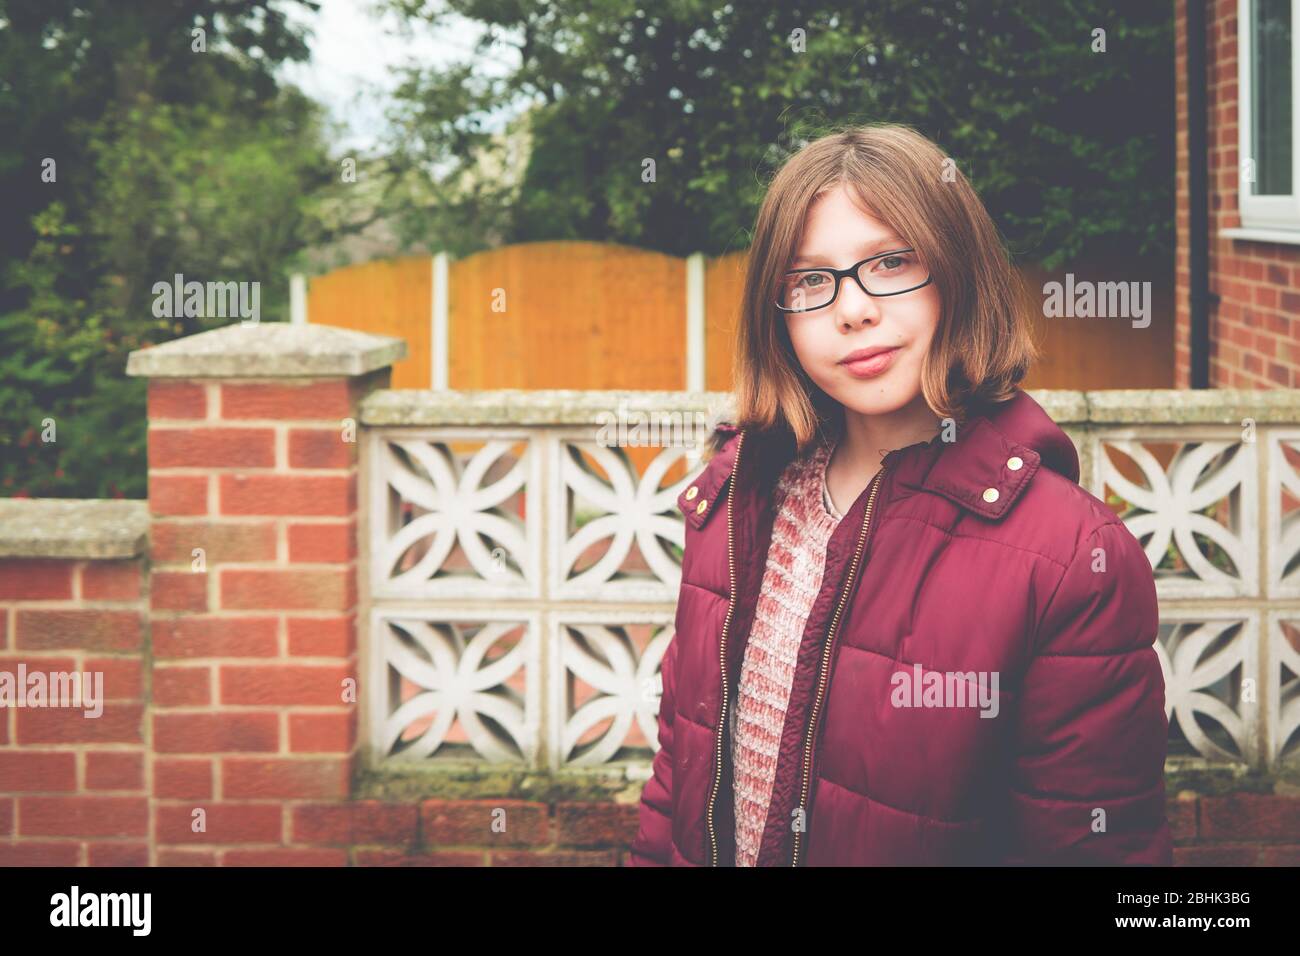 Autentico ritratto suburbano giardino di una ragazza fiduciosa con busto corto, occhiali e spesso cappotto Foto Stock